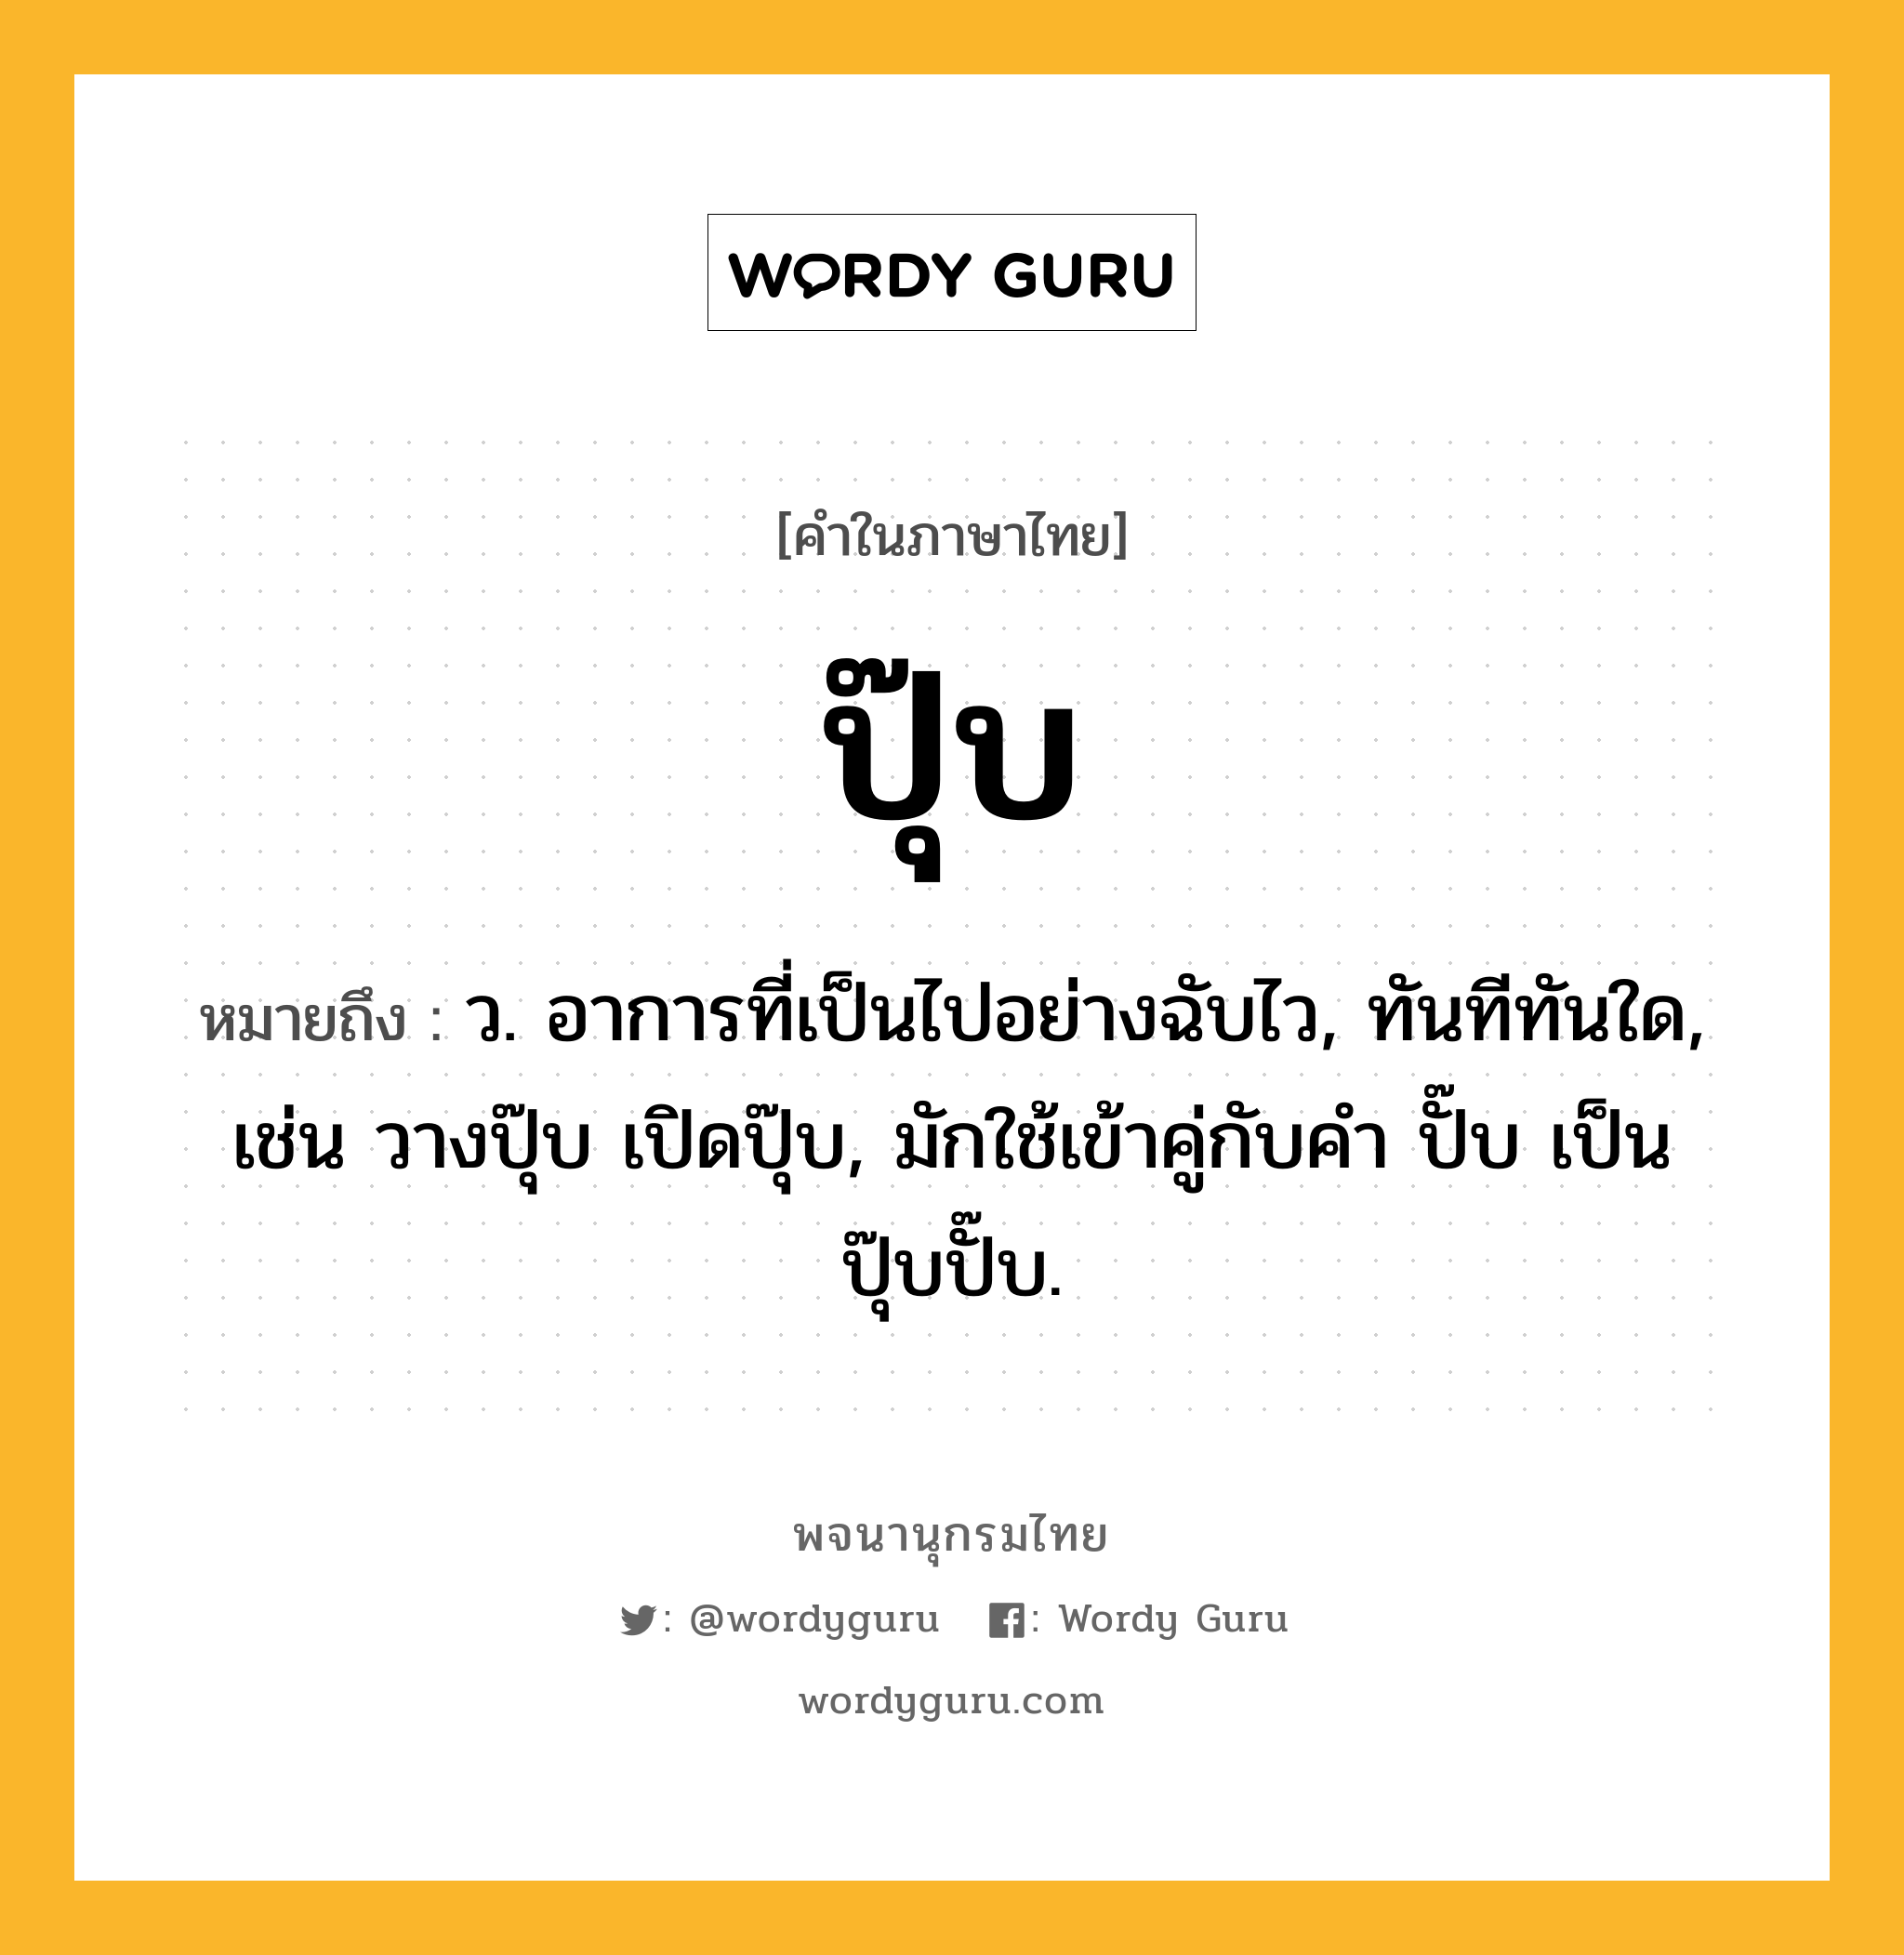 ปุ๊บ หมายถึงอะไร?, คำในภาษาไทย ปุ๊บ หมายถึง ว. อาการที่เป็นไปอย่างฉับไว, ทันทีทันใด, เช่น วางปุ๊บ เปิดปุ๊บ, มักใช้เข้าคู่กับคำ ปั๊บ เป็น ปุ๊บปั๊บ.